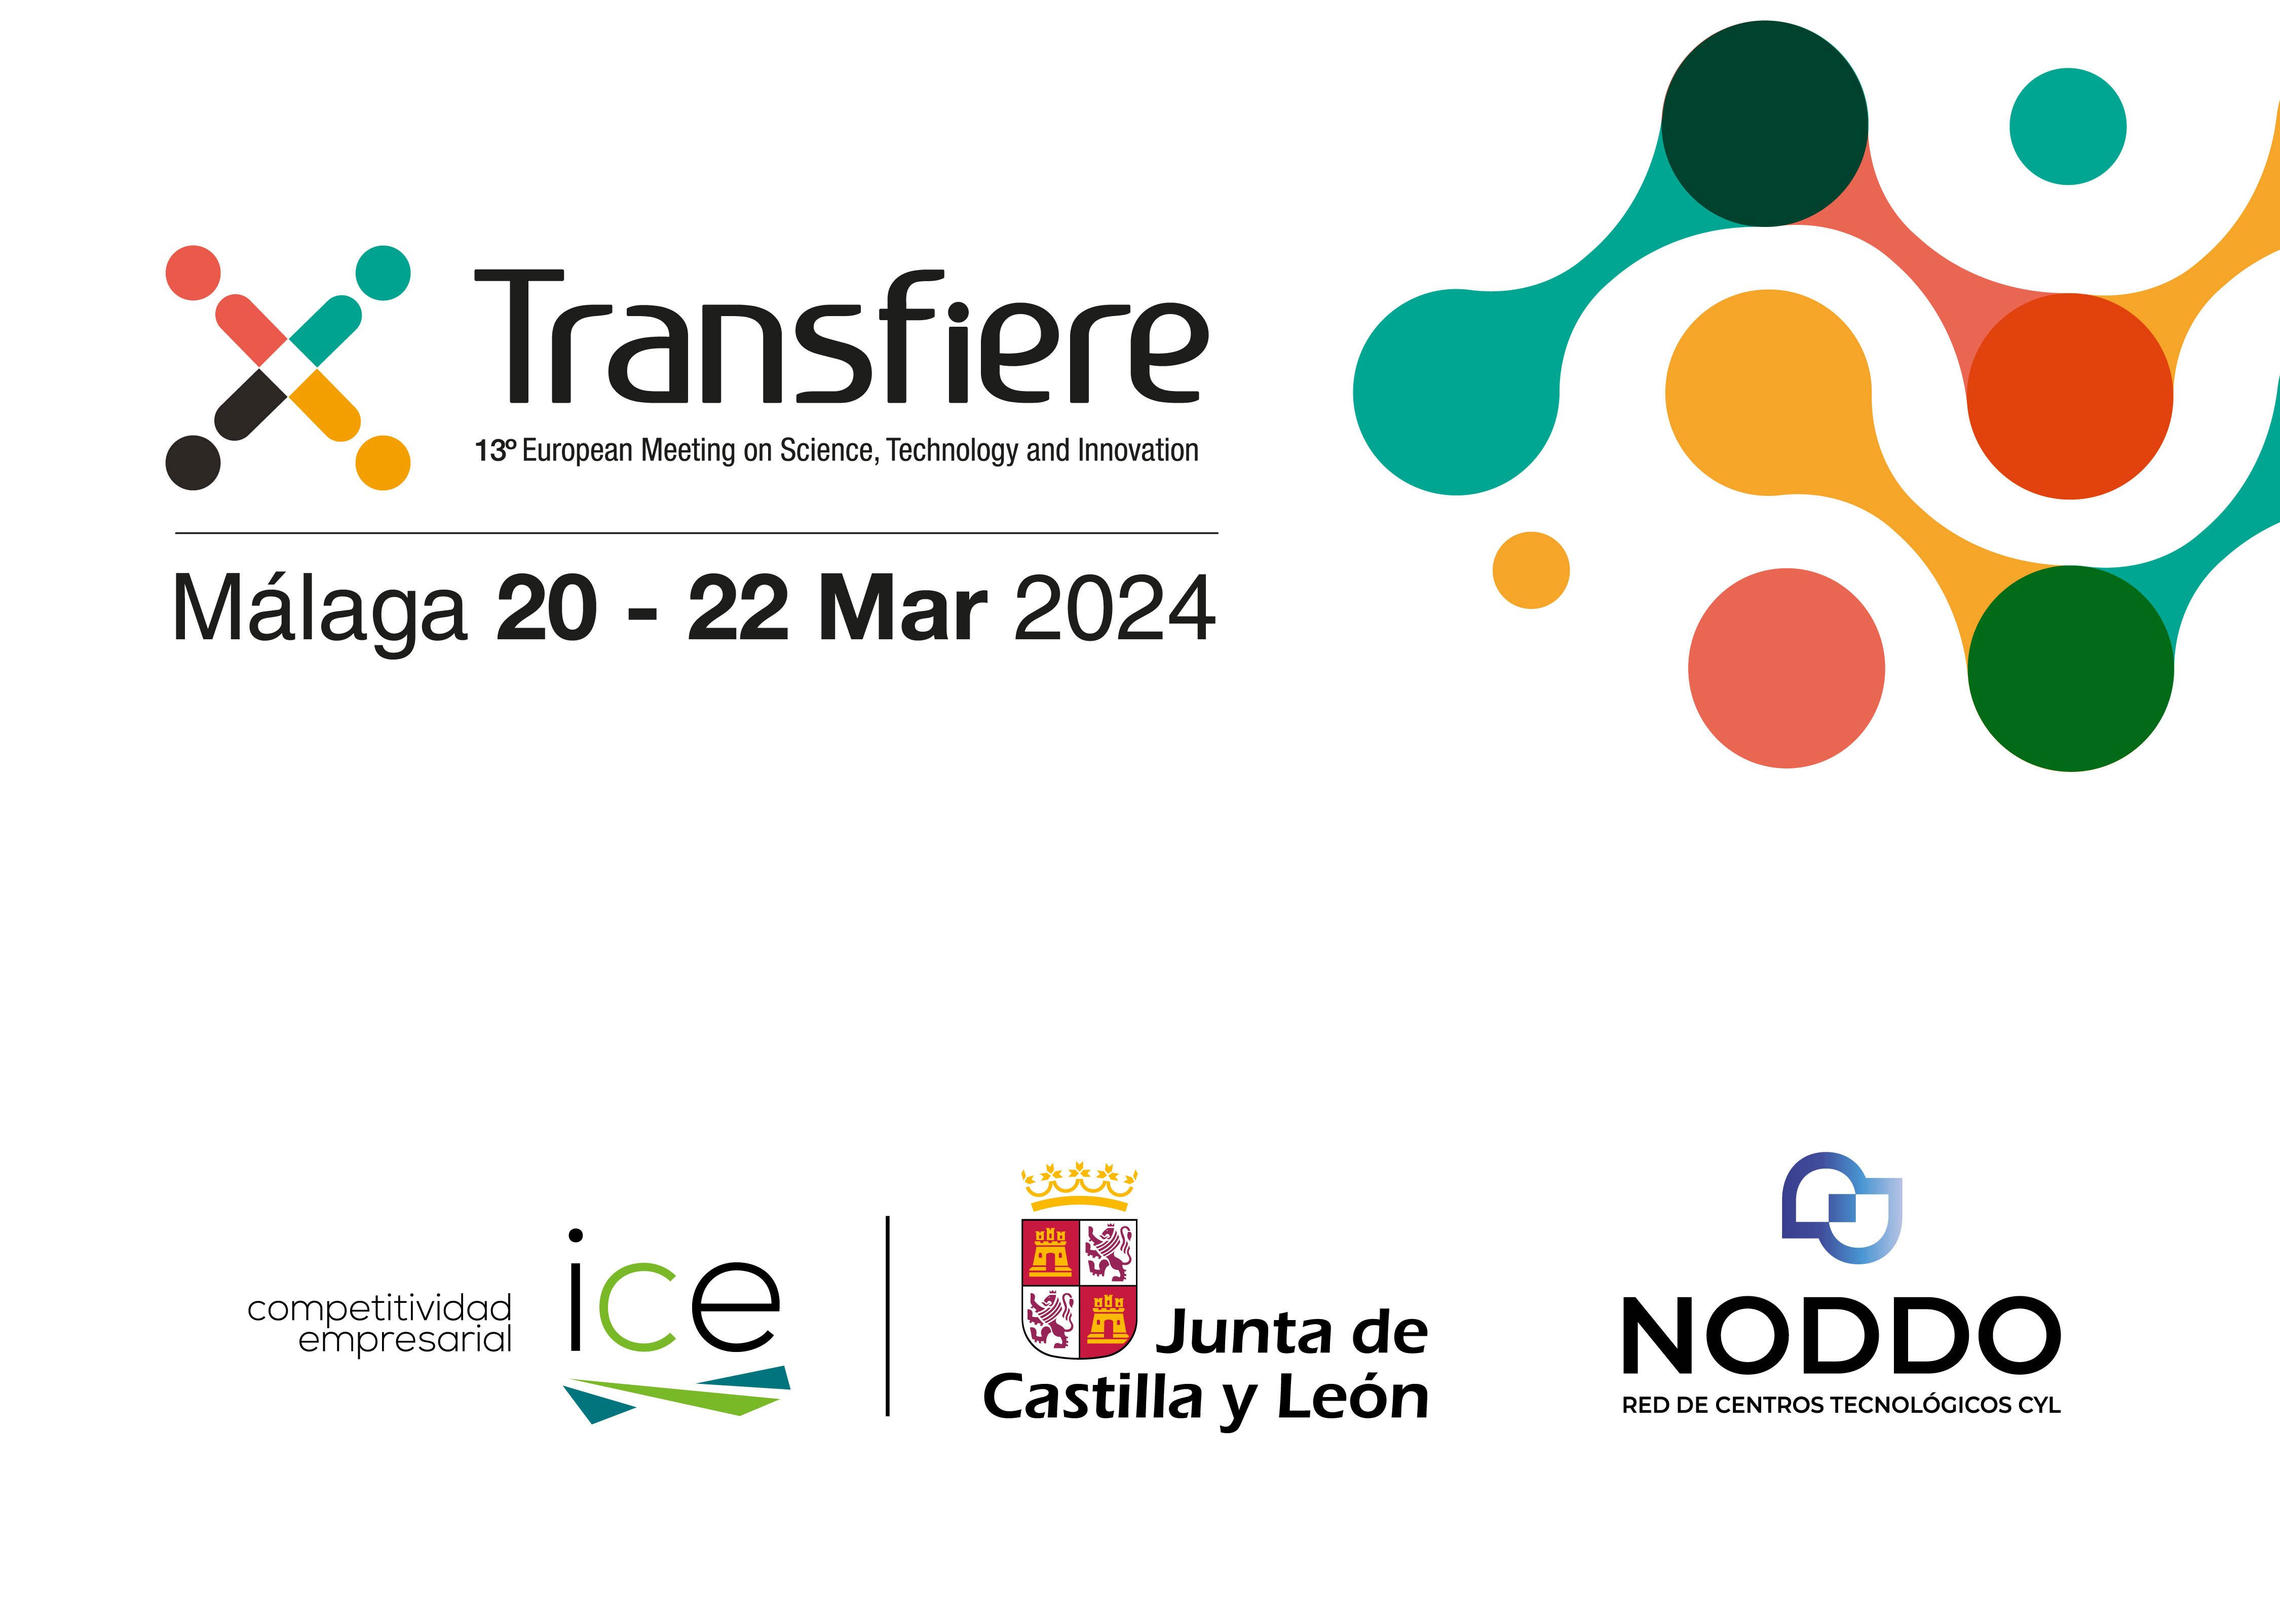 Tejiendo el futuro de la innovación, NODDO y los Centros Tecnológicos de Castilla y León en Transfiere 2024